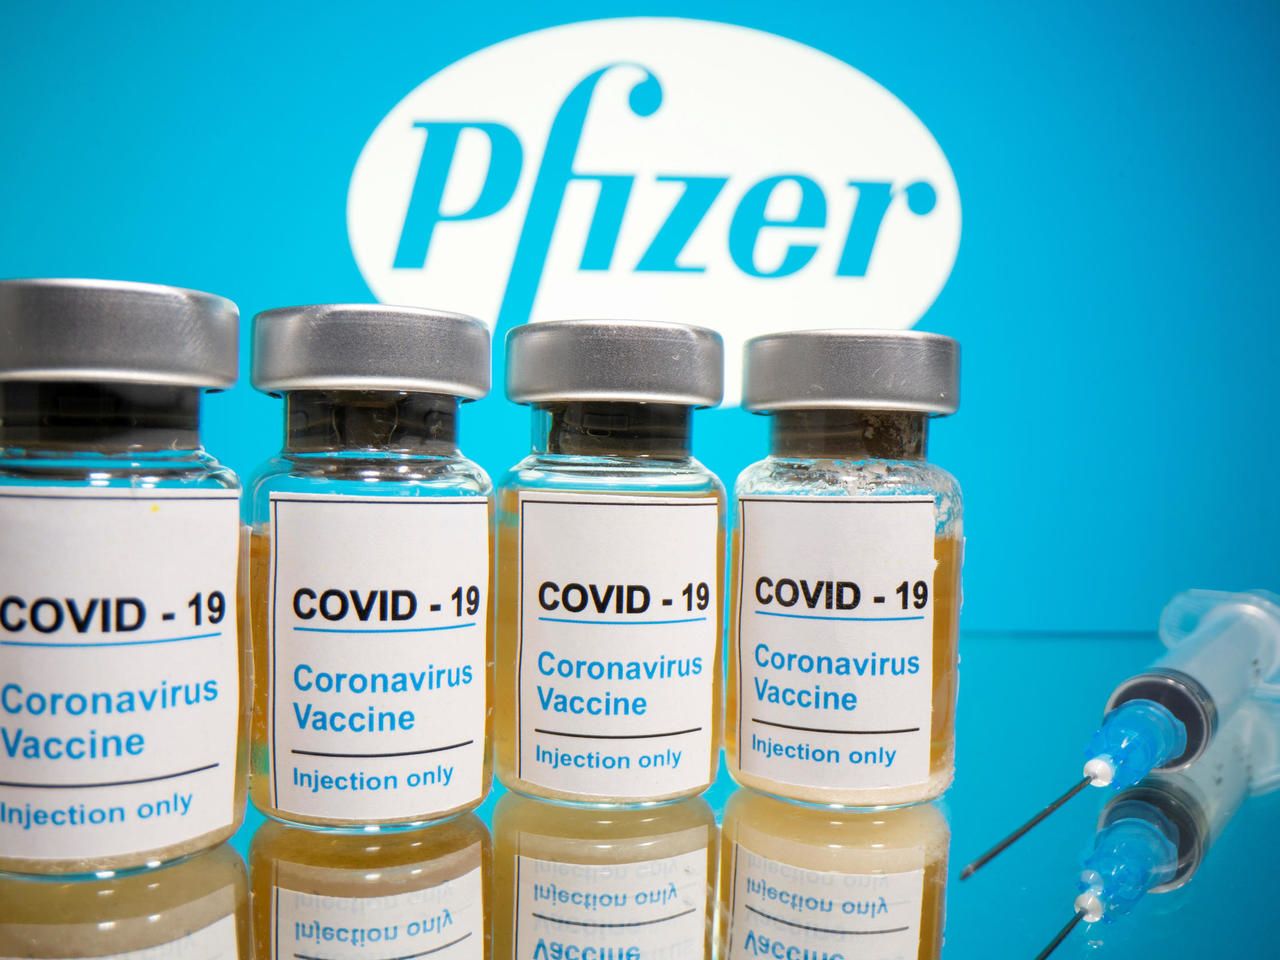 Vacuna contra Covid-19 en Argentina: Pfizer inició el pedido de autorización en Anmat